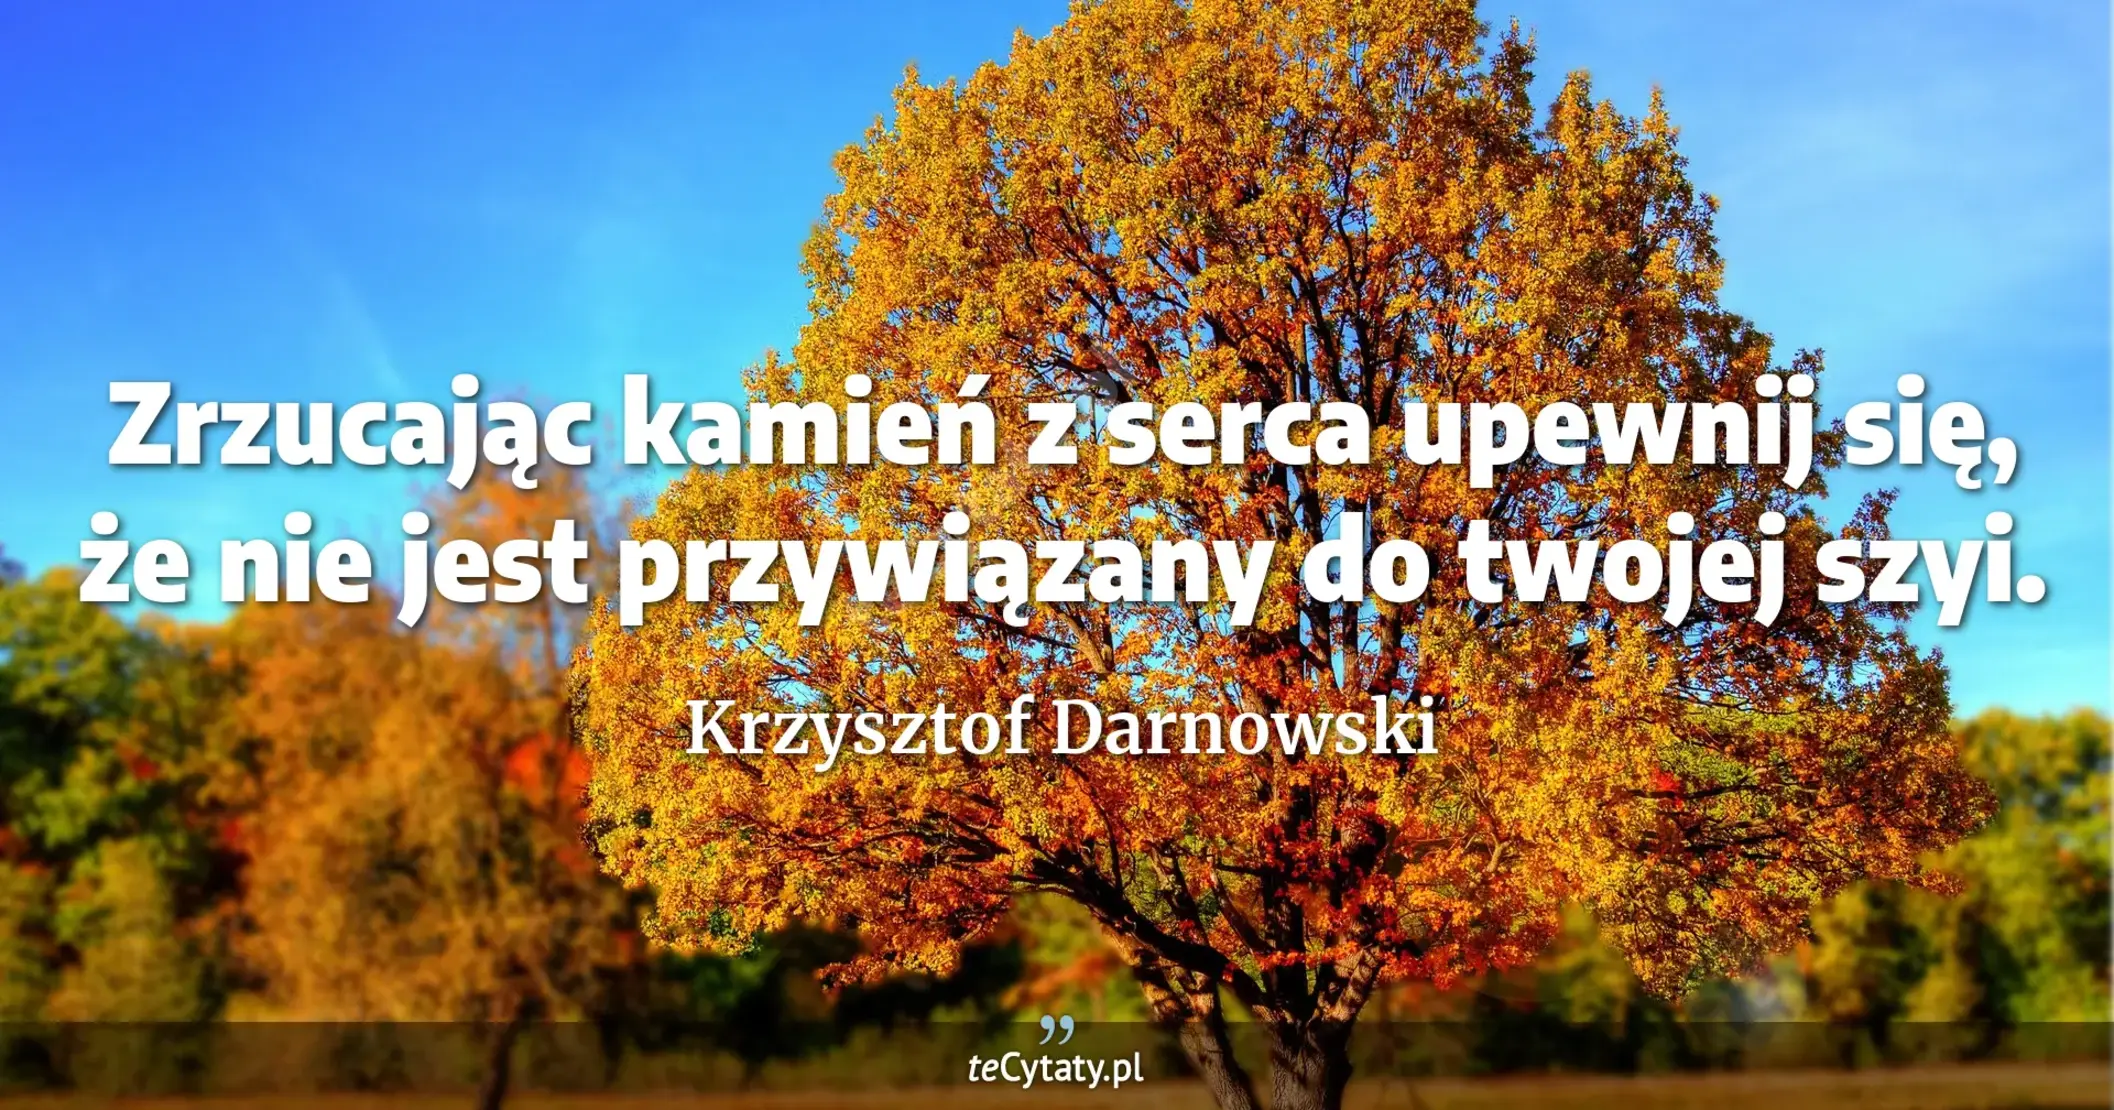 Zrzucając kamień z serca upewnij się, że nie jest przywiązany do twojej szyi. - Krzysztof Darnowski